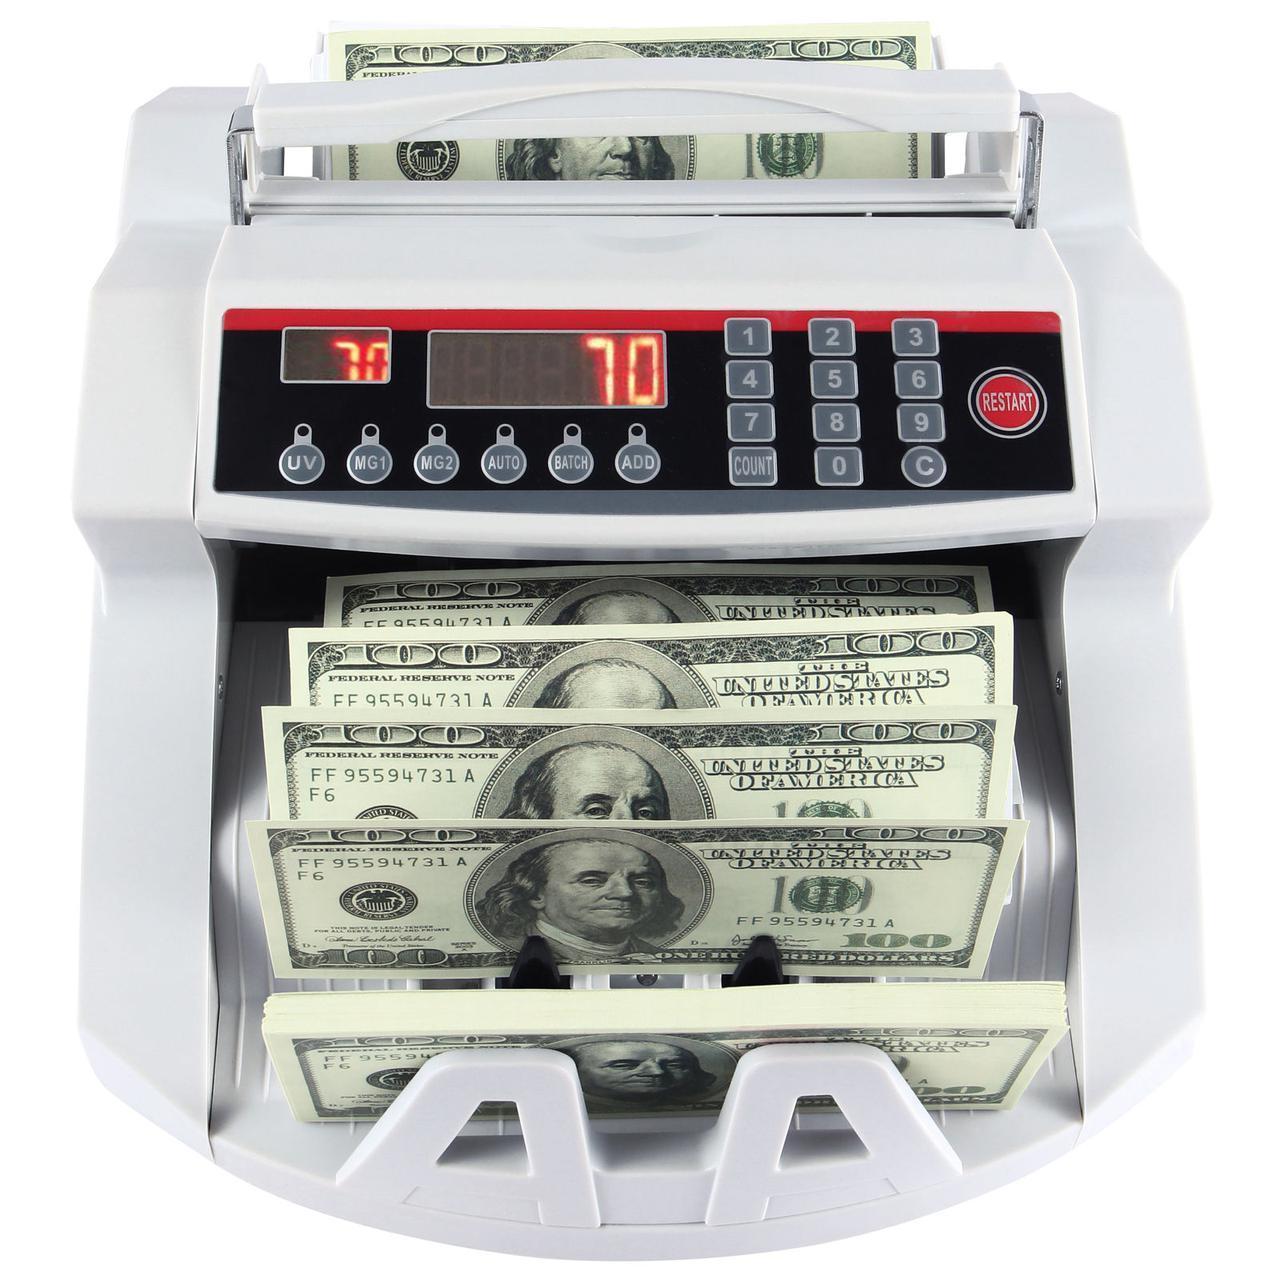  машинка для денег 2089 – фото, отзывы, характеристики в .